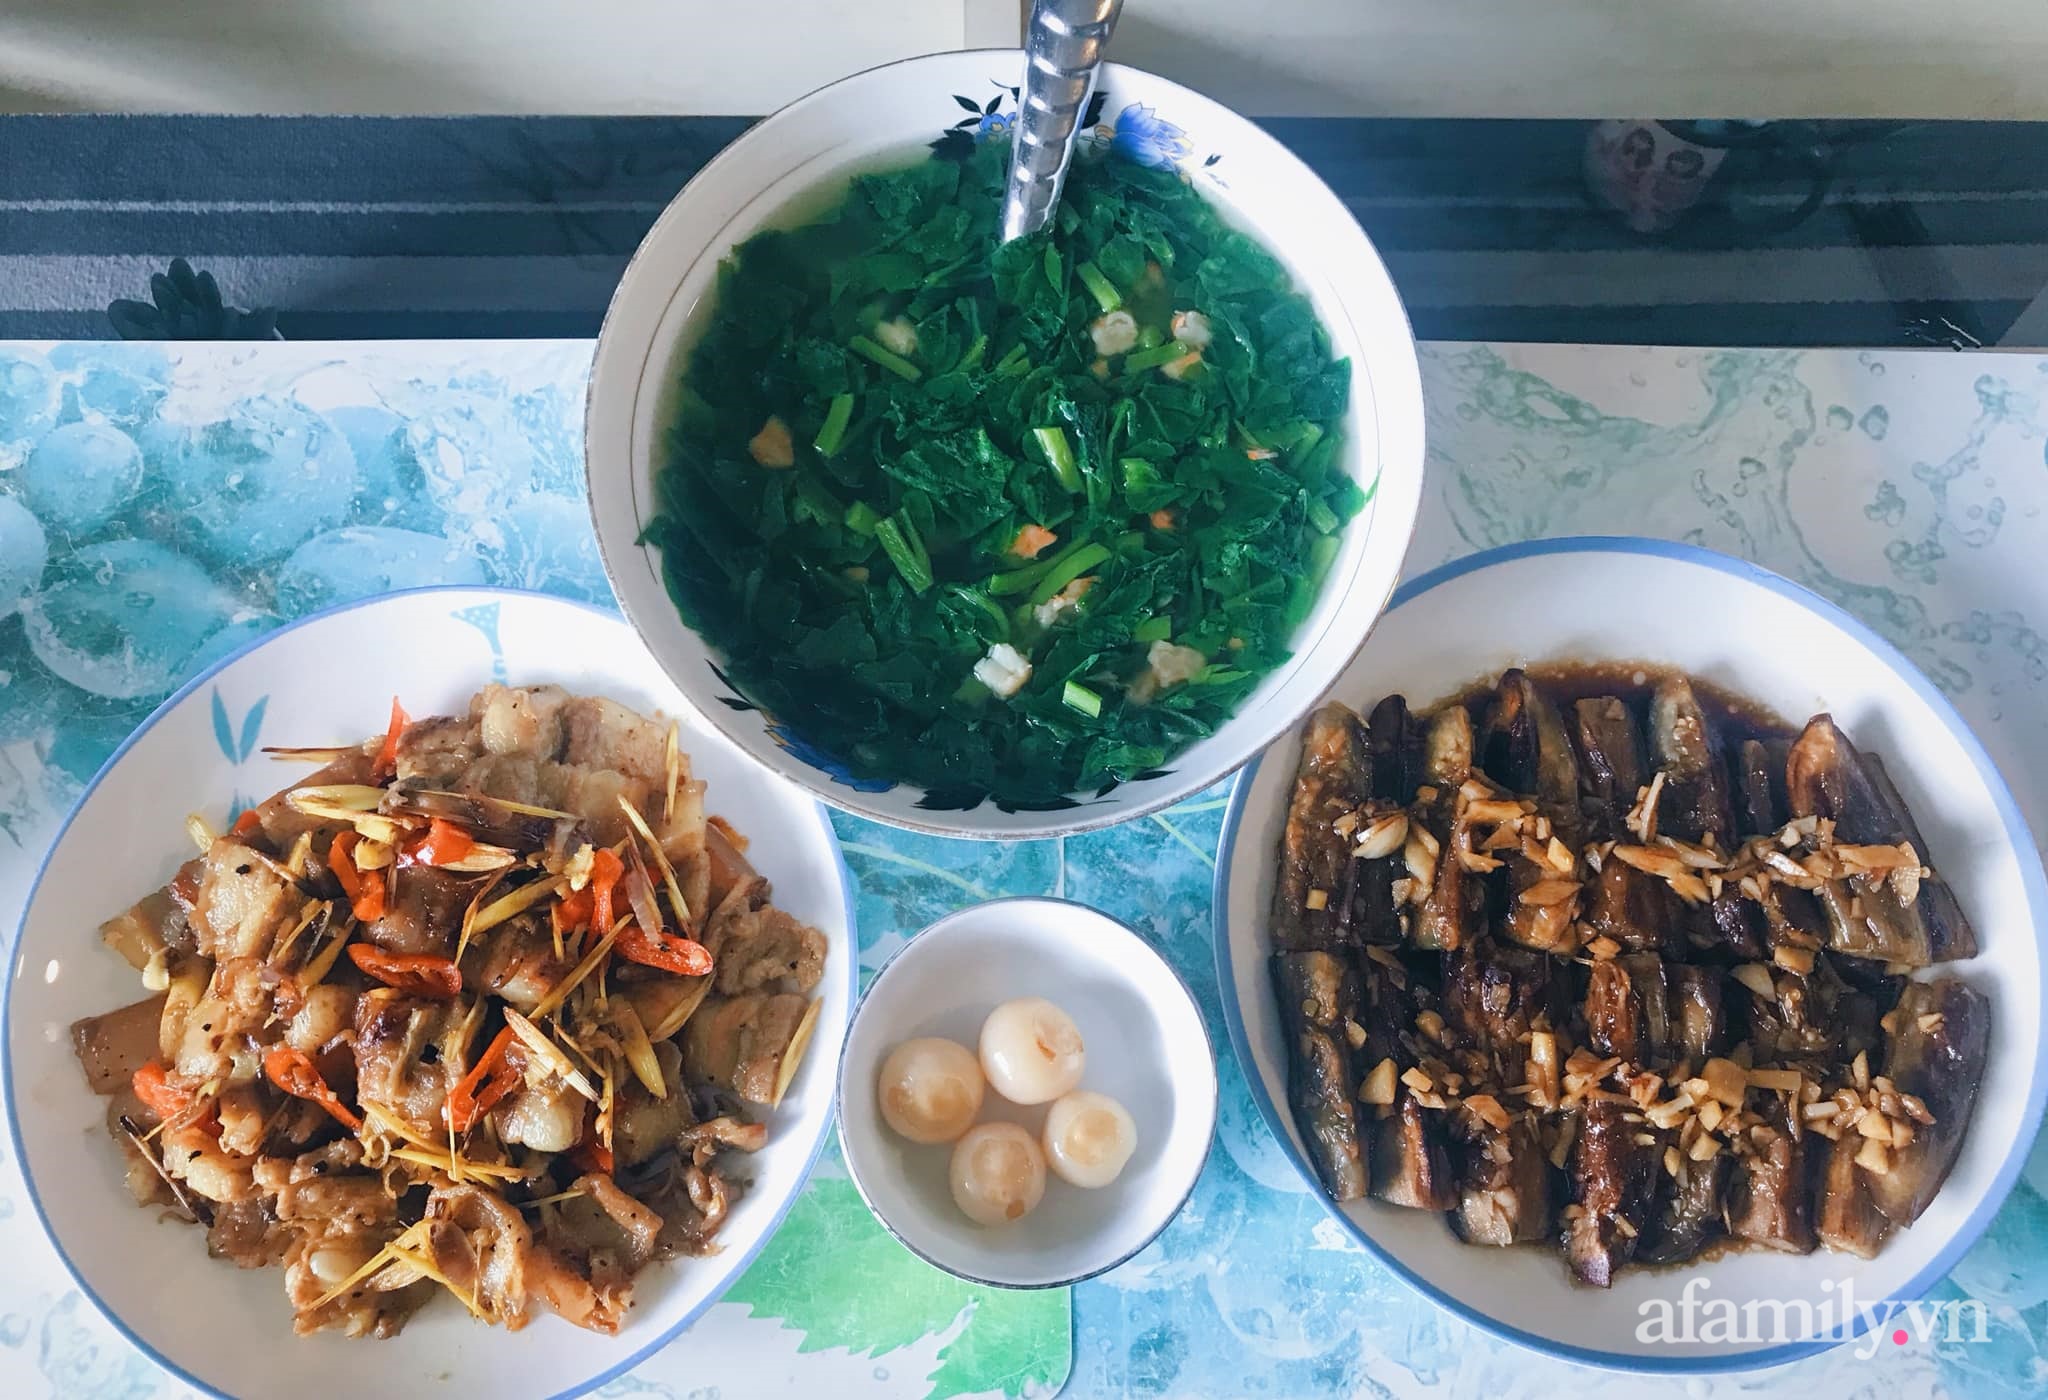 Những mâm cơm chỉ từ 50K &quot;vợ nấu chính chồng phụ bếp&quot; tại Hà Nội khiến chị em nào cũng xuýt xoa vì đúng chuẩn gia đình kiểu mẫu - Ảnh 5.